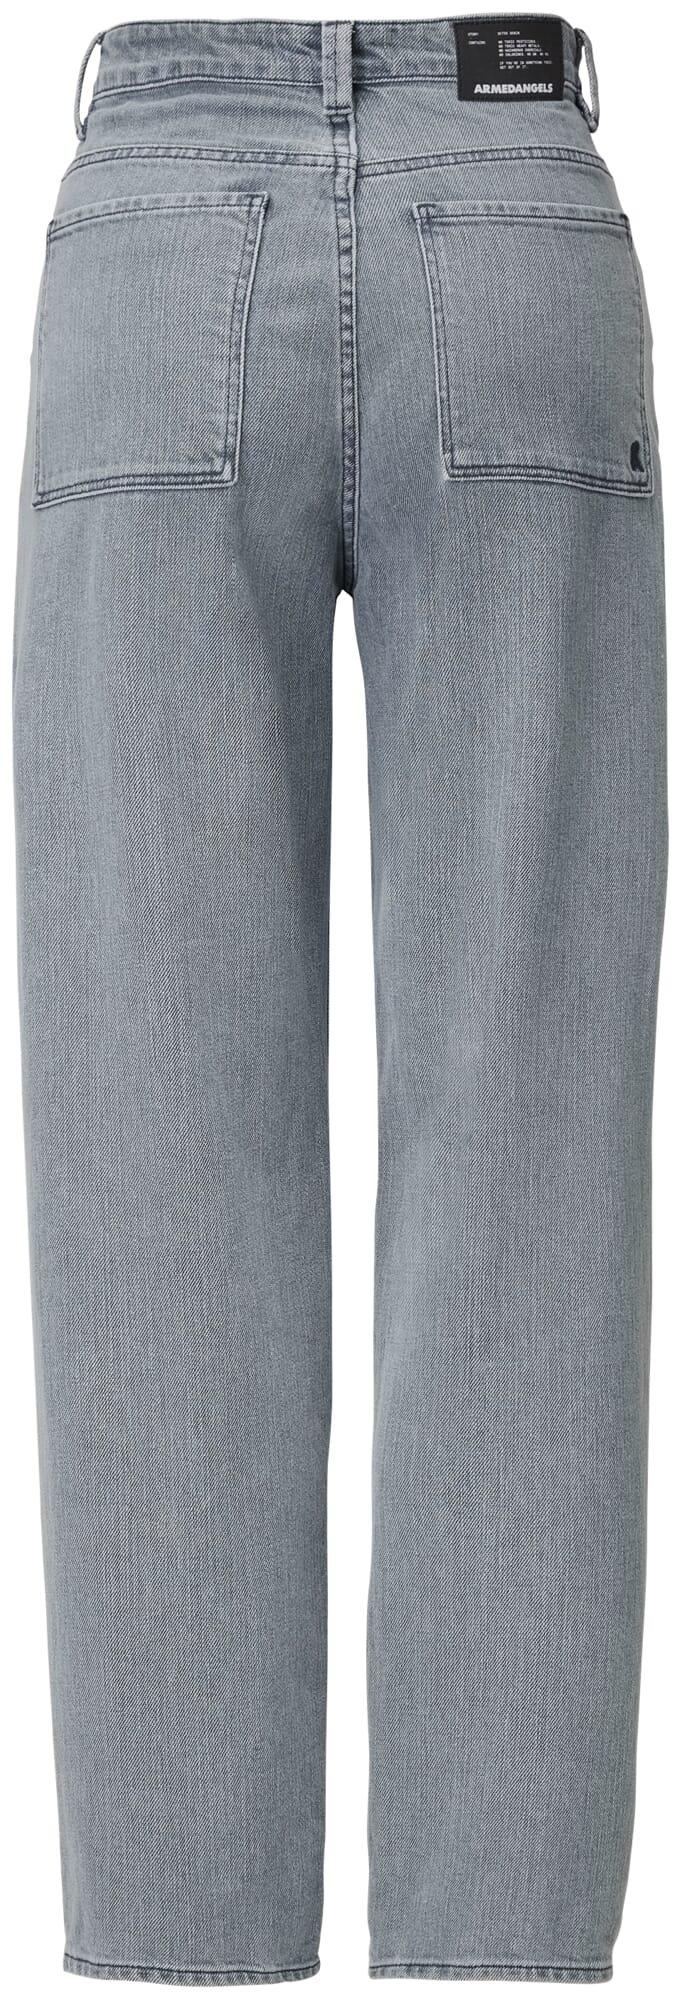 Ladies Five Pocket Jeans, Medium gray | Manufactum